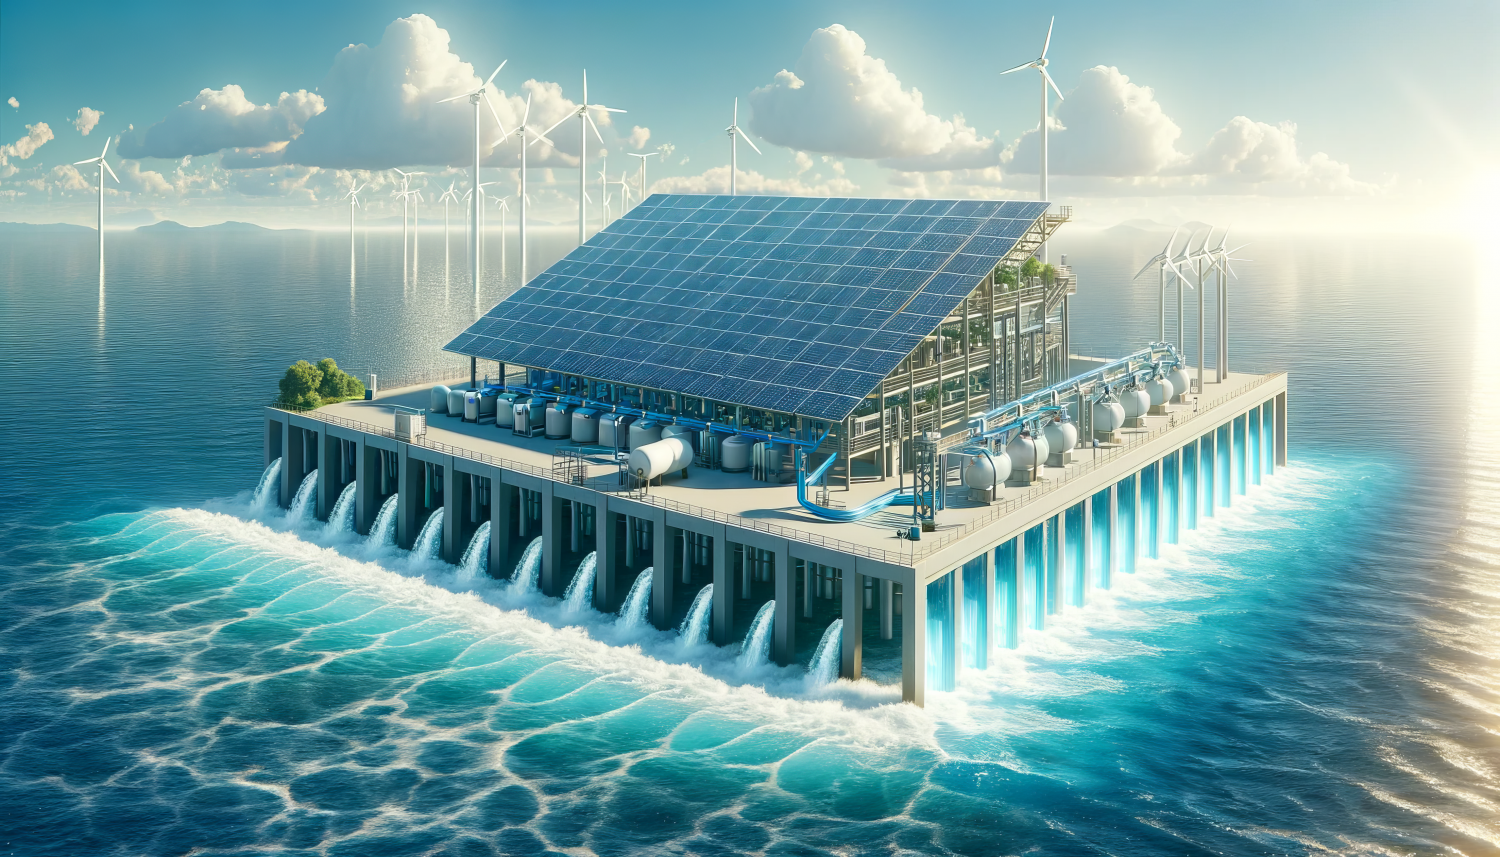 Giải pháp nước sạch toàn cầu: Ứng dụng năng lượng mặt trời trong lọc nước biển